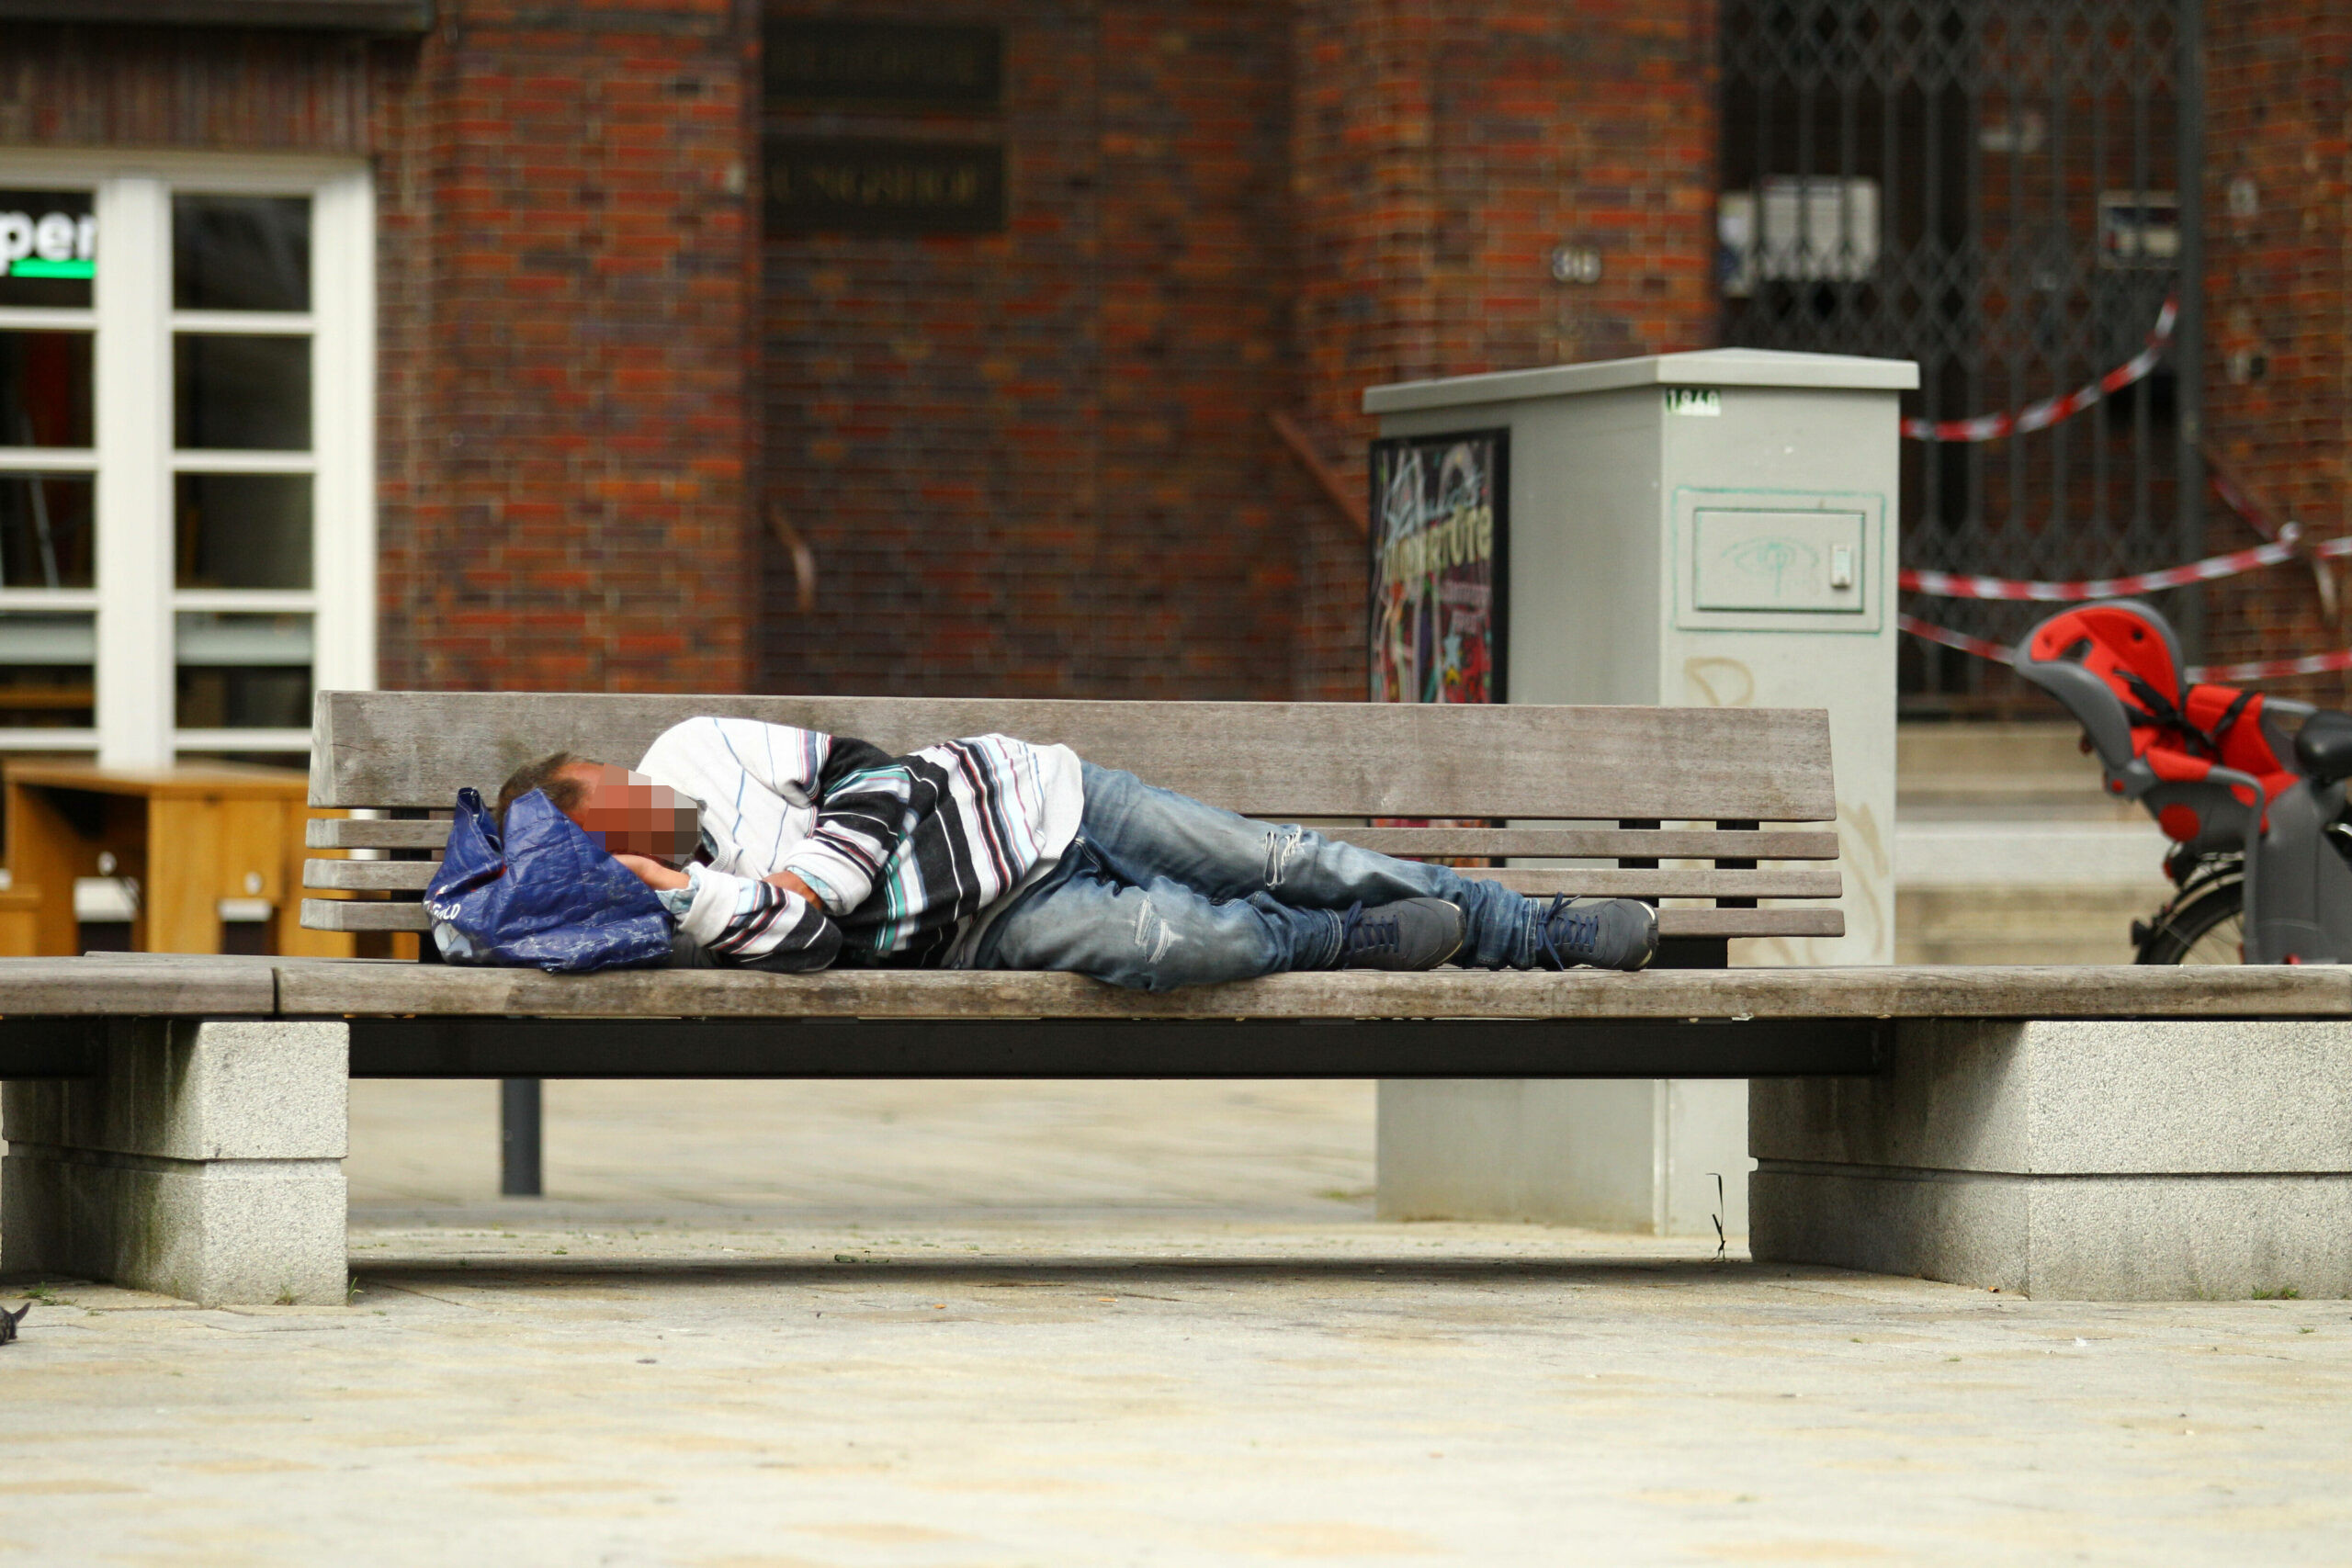 Verbrennungen, Dehydration: Viele Obdachlose leiden unter der Hitze. Oft schlafen sie im Schatten ein und wachen in der prallen Sonne wieder auf.